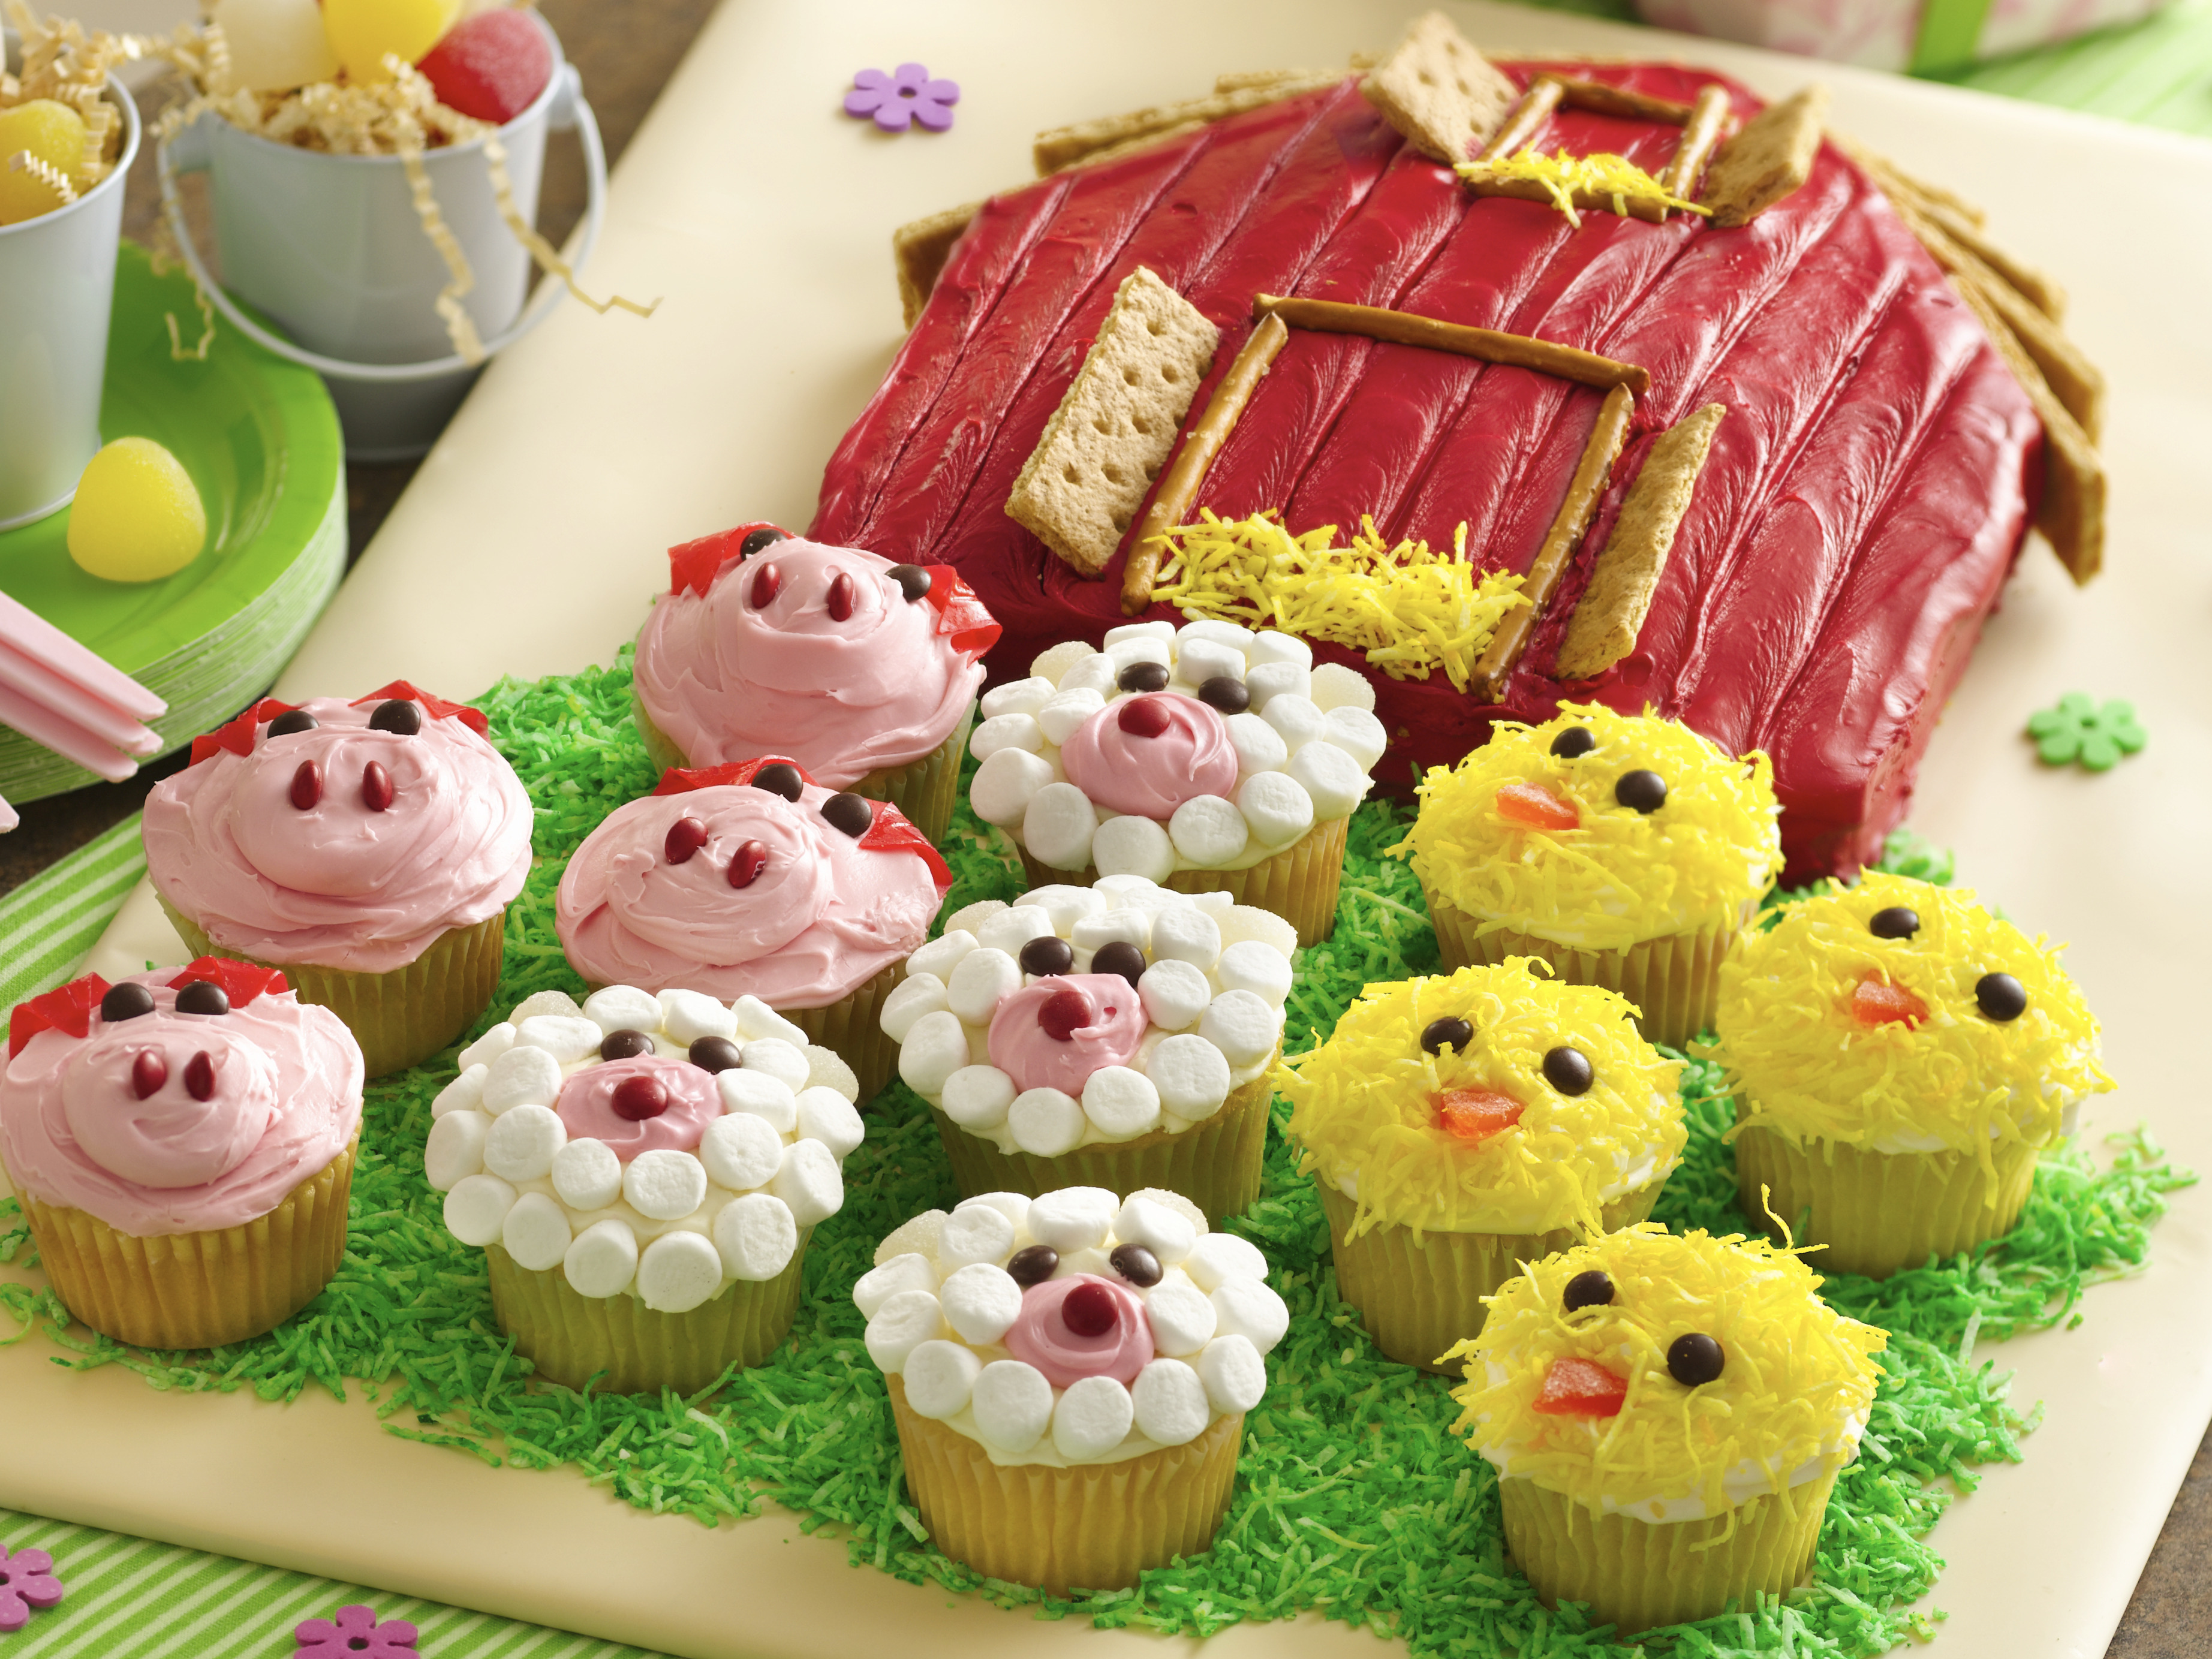 Farm Animals cake - Decorated Cake by Sweet Mantra - CakesDecor